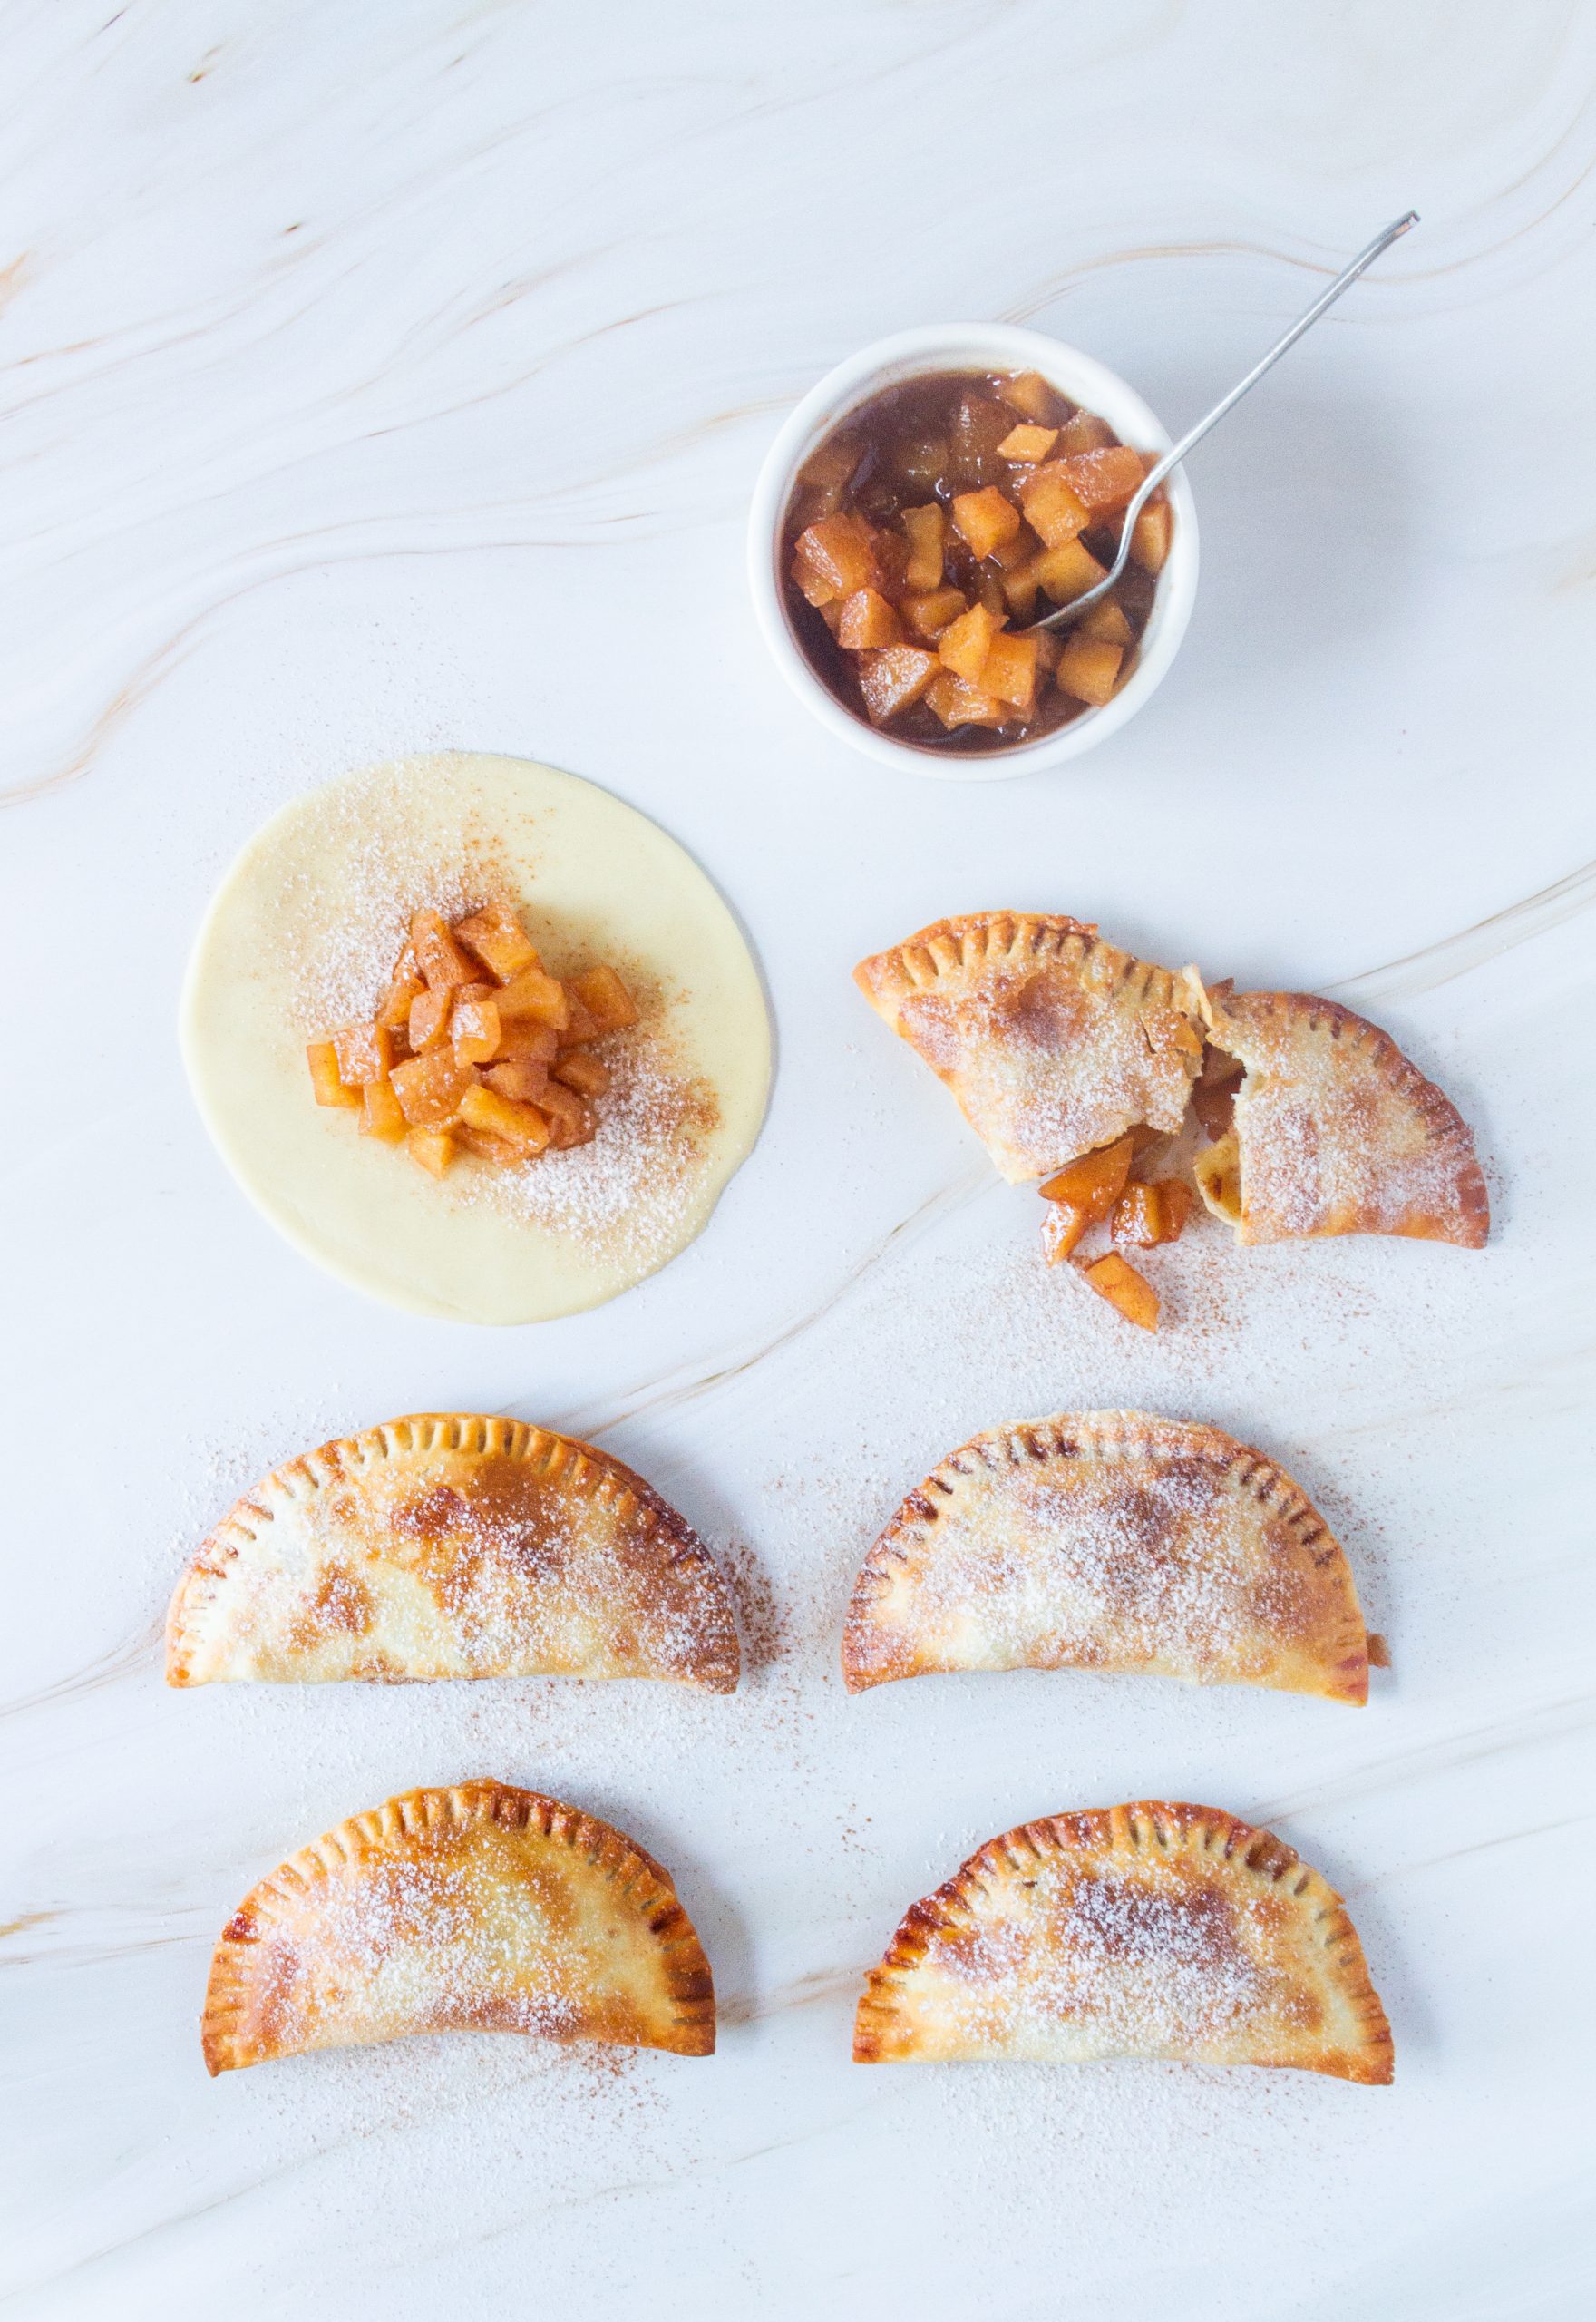 Receta de Empanadas de manzana - Instant Blog